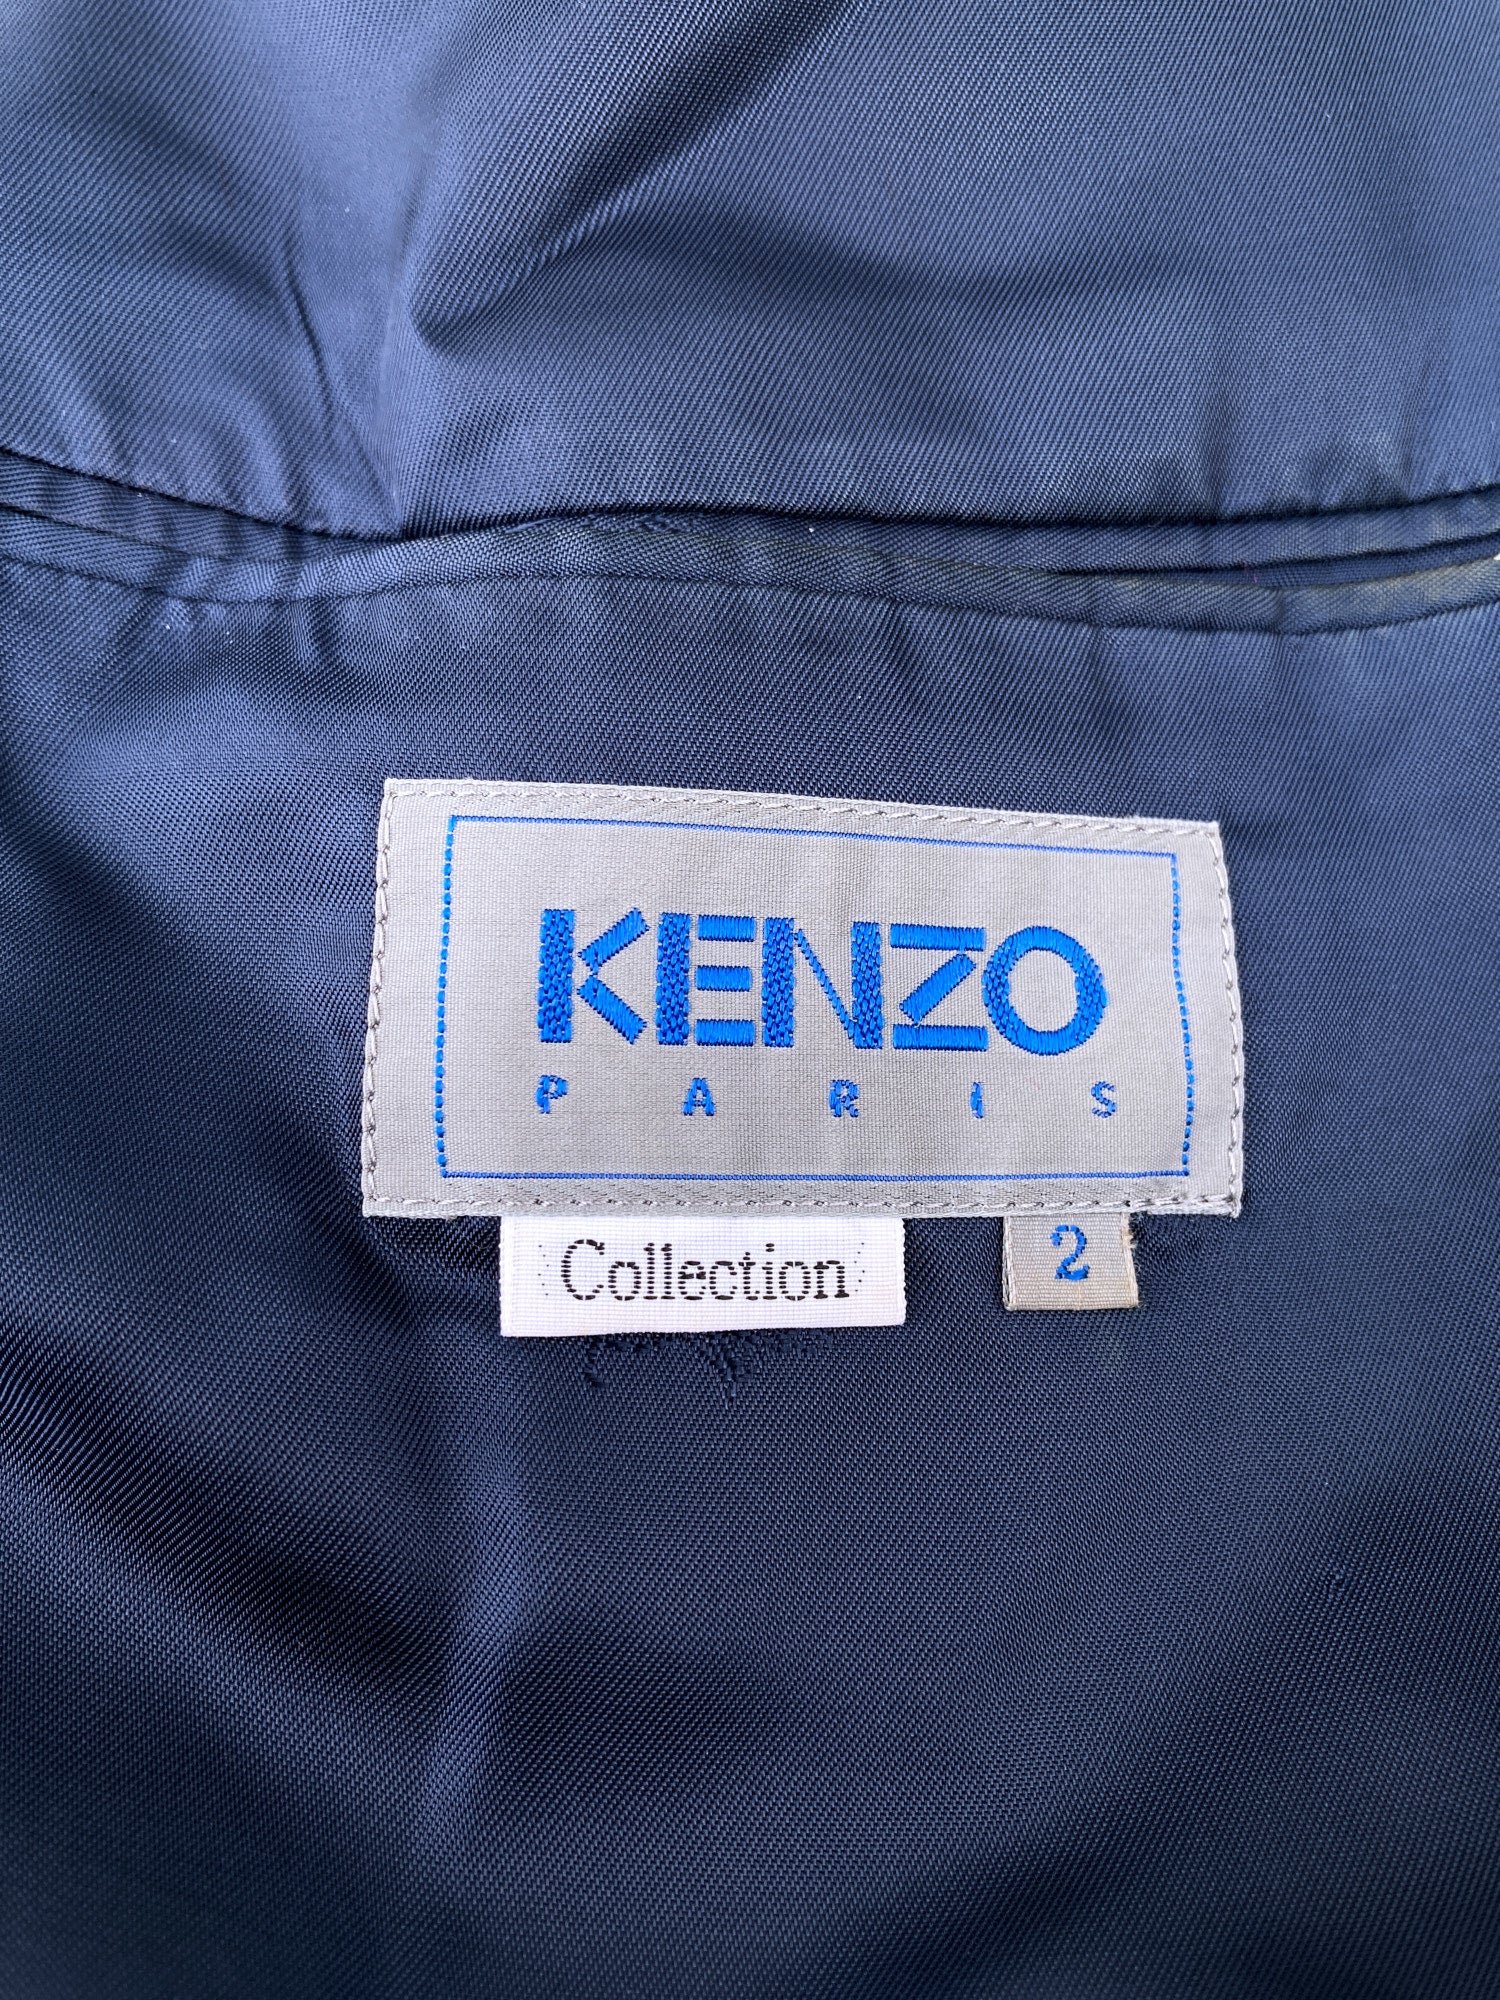 Kenzo Paris Collection 1980s brown purple blue black check two button blazer - M